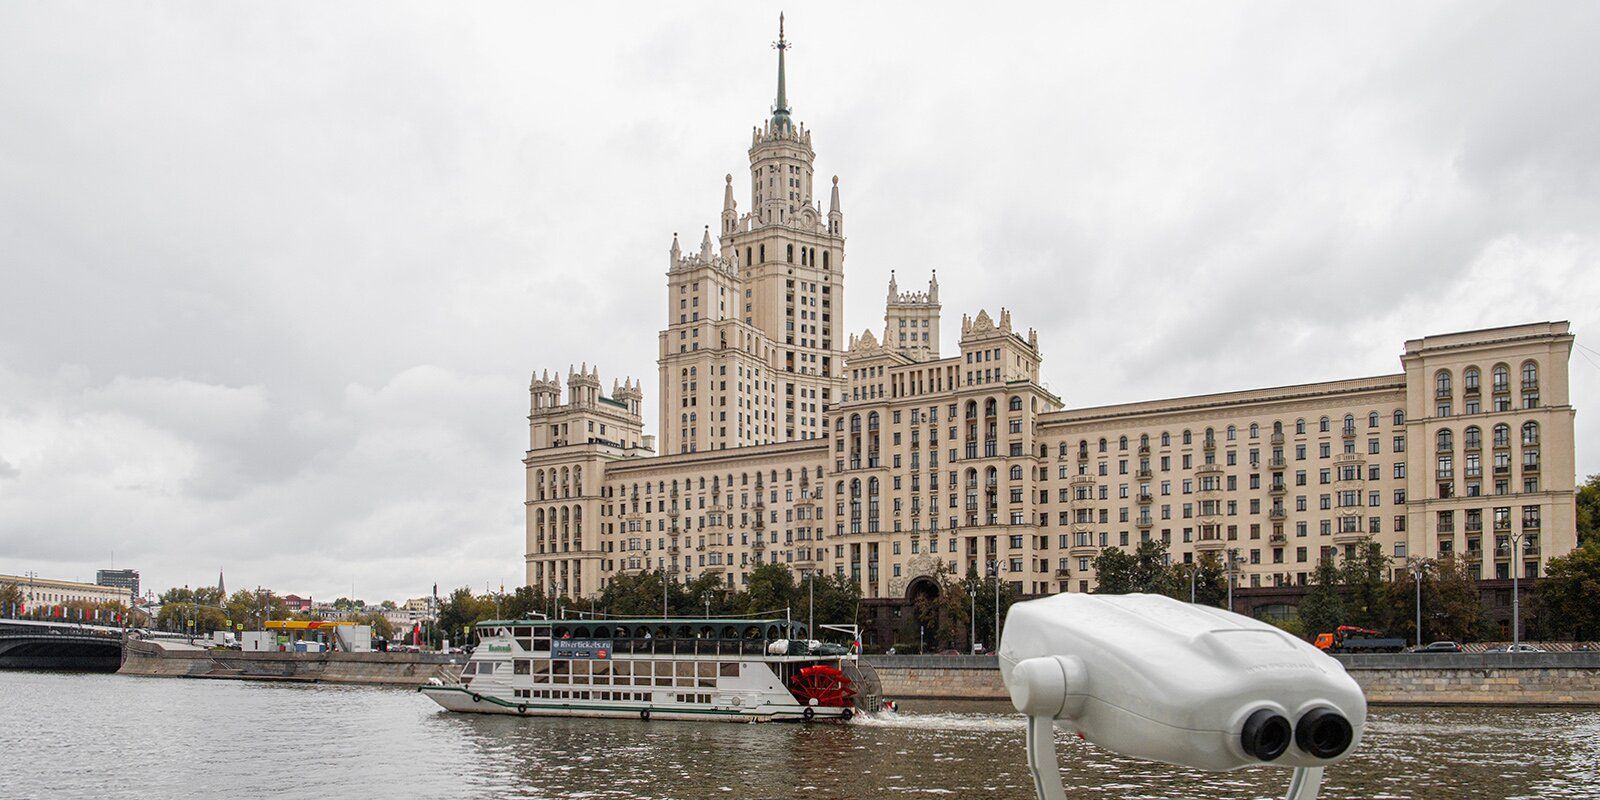 Фото М. Мишина. Пресс-служба Мэра и Правительства Москвы